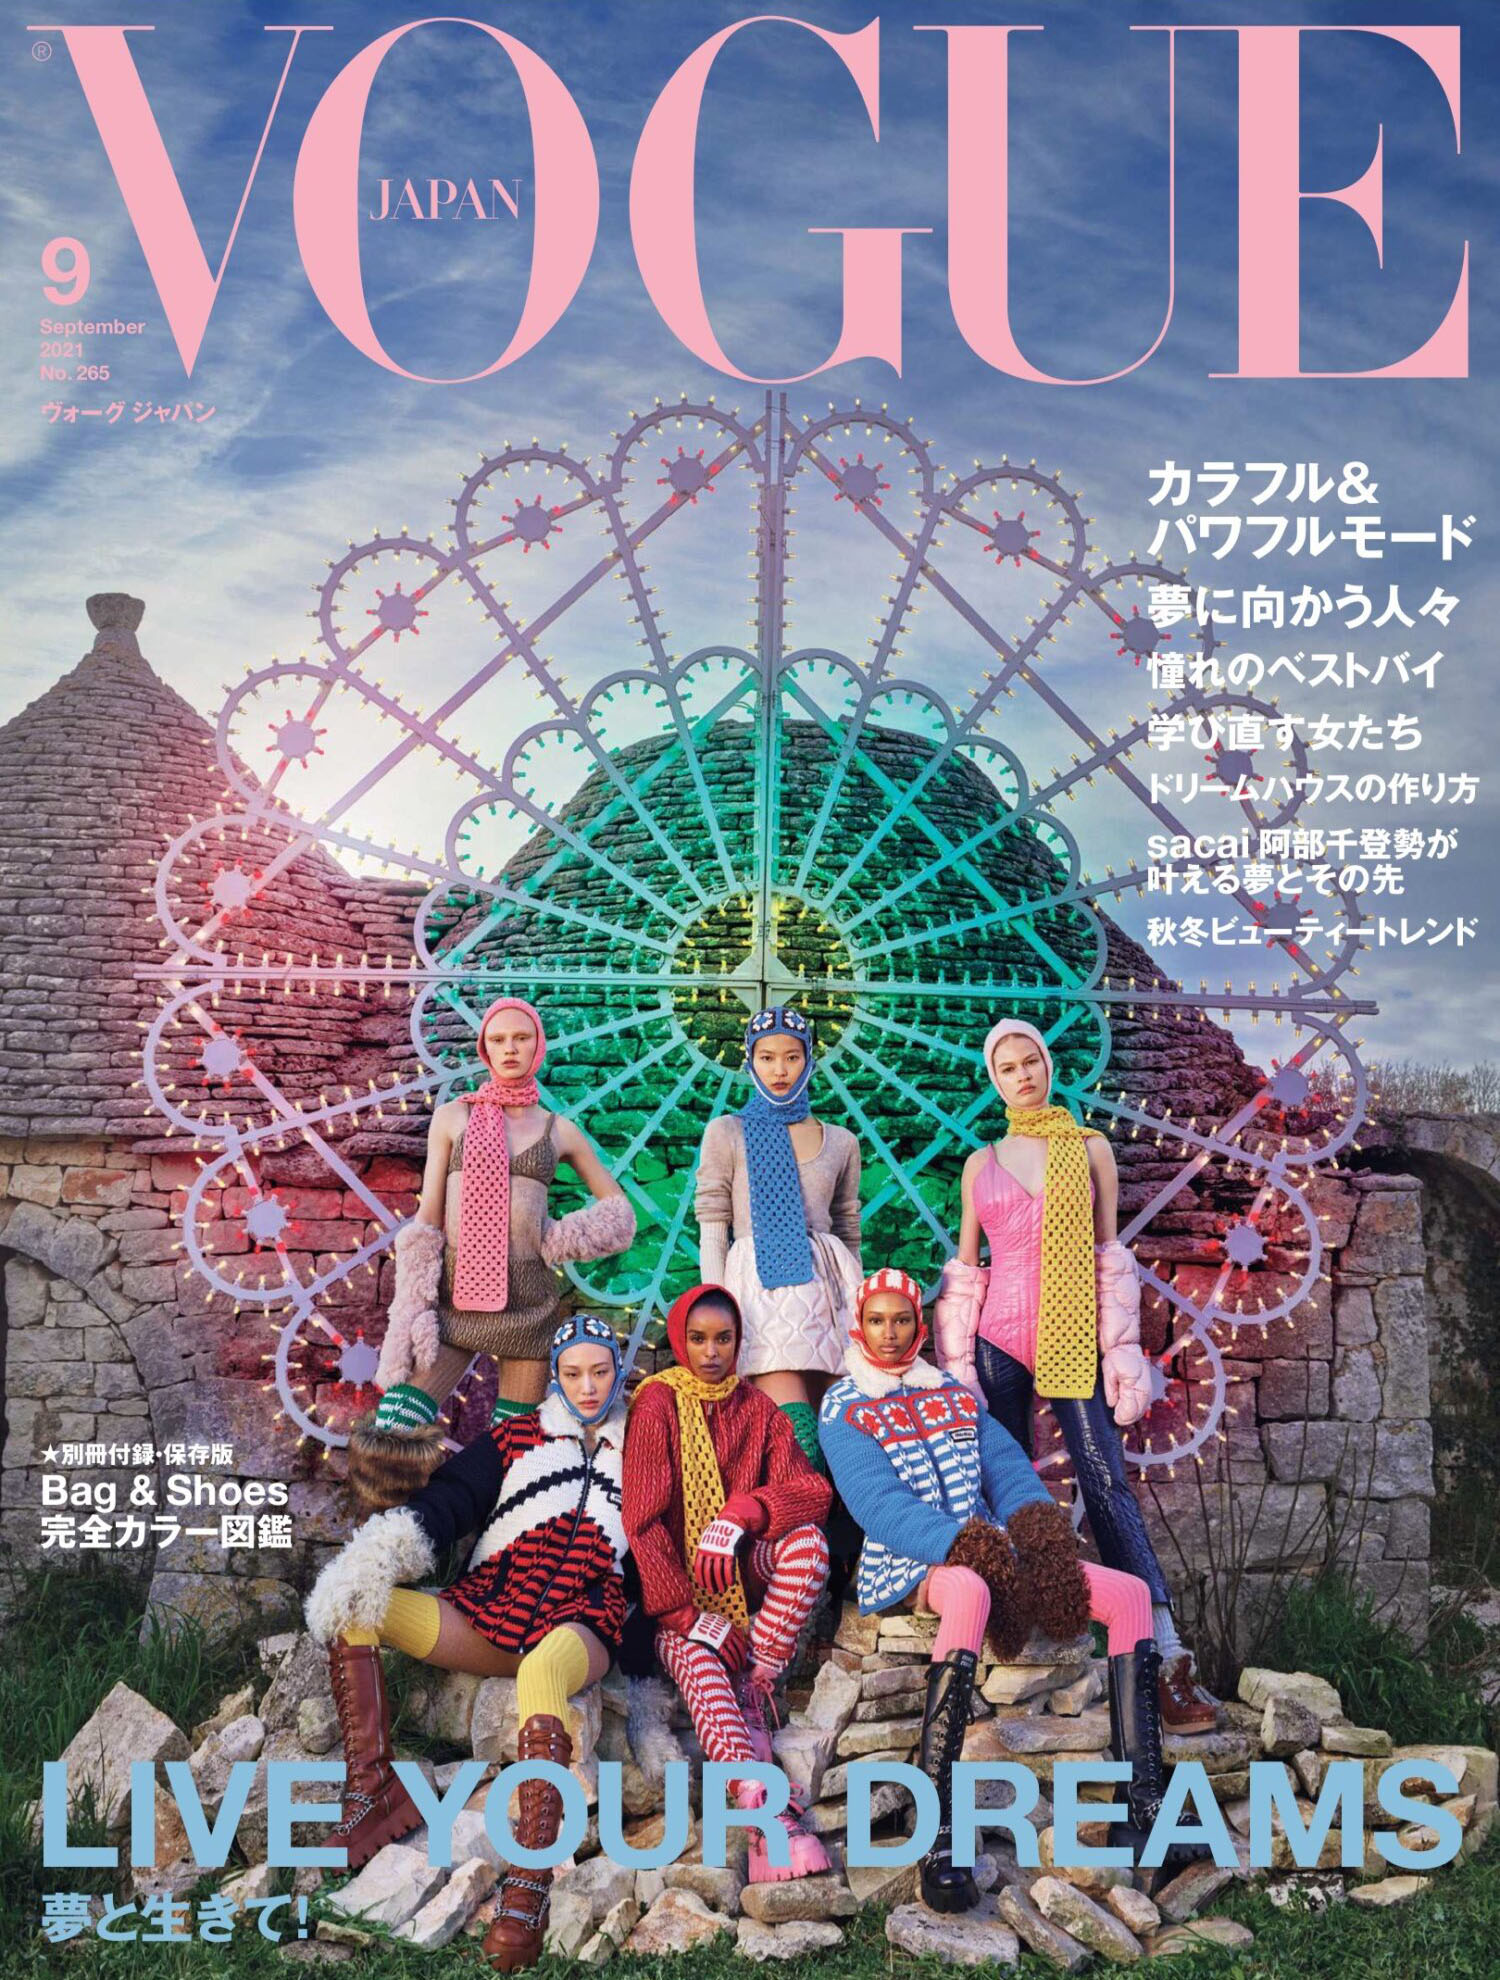 Vogue Japan September 2021 cover by Luigi & Iango